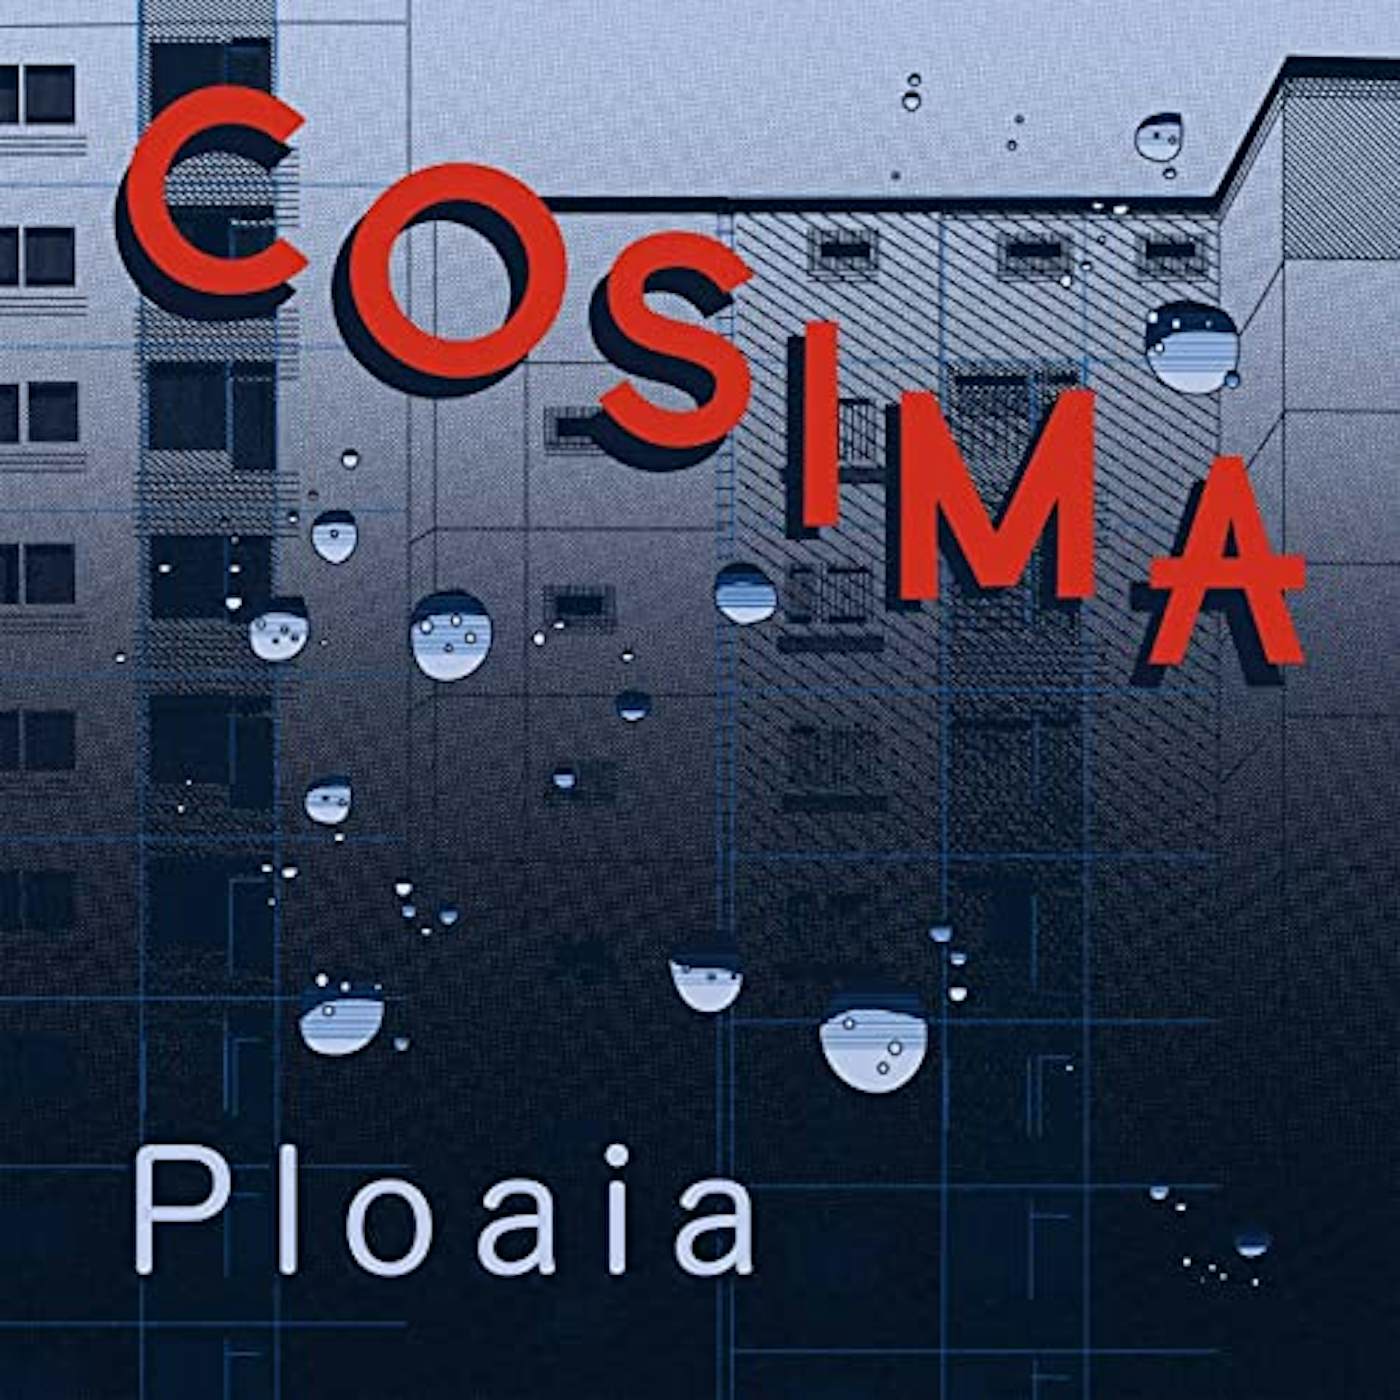 Cosima Ploaia Vinyl Record